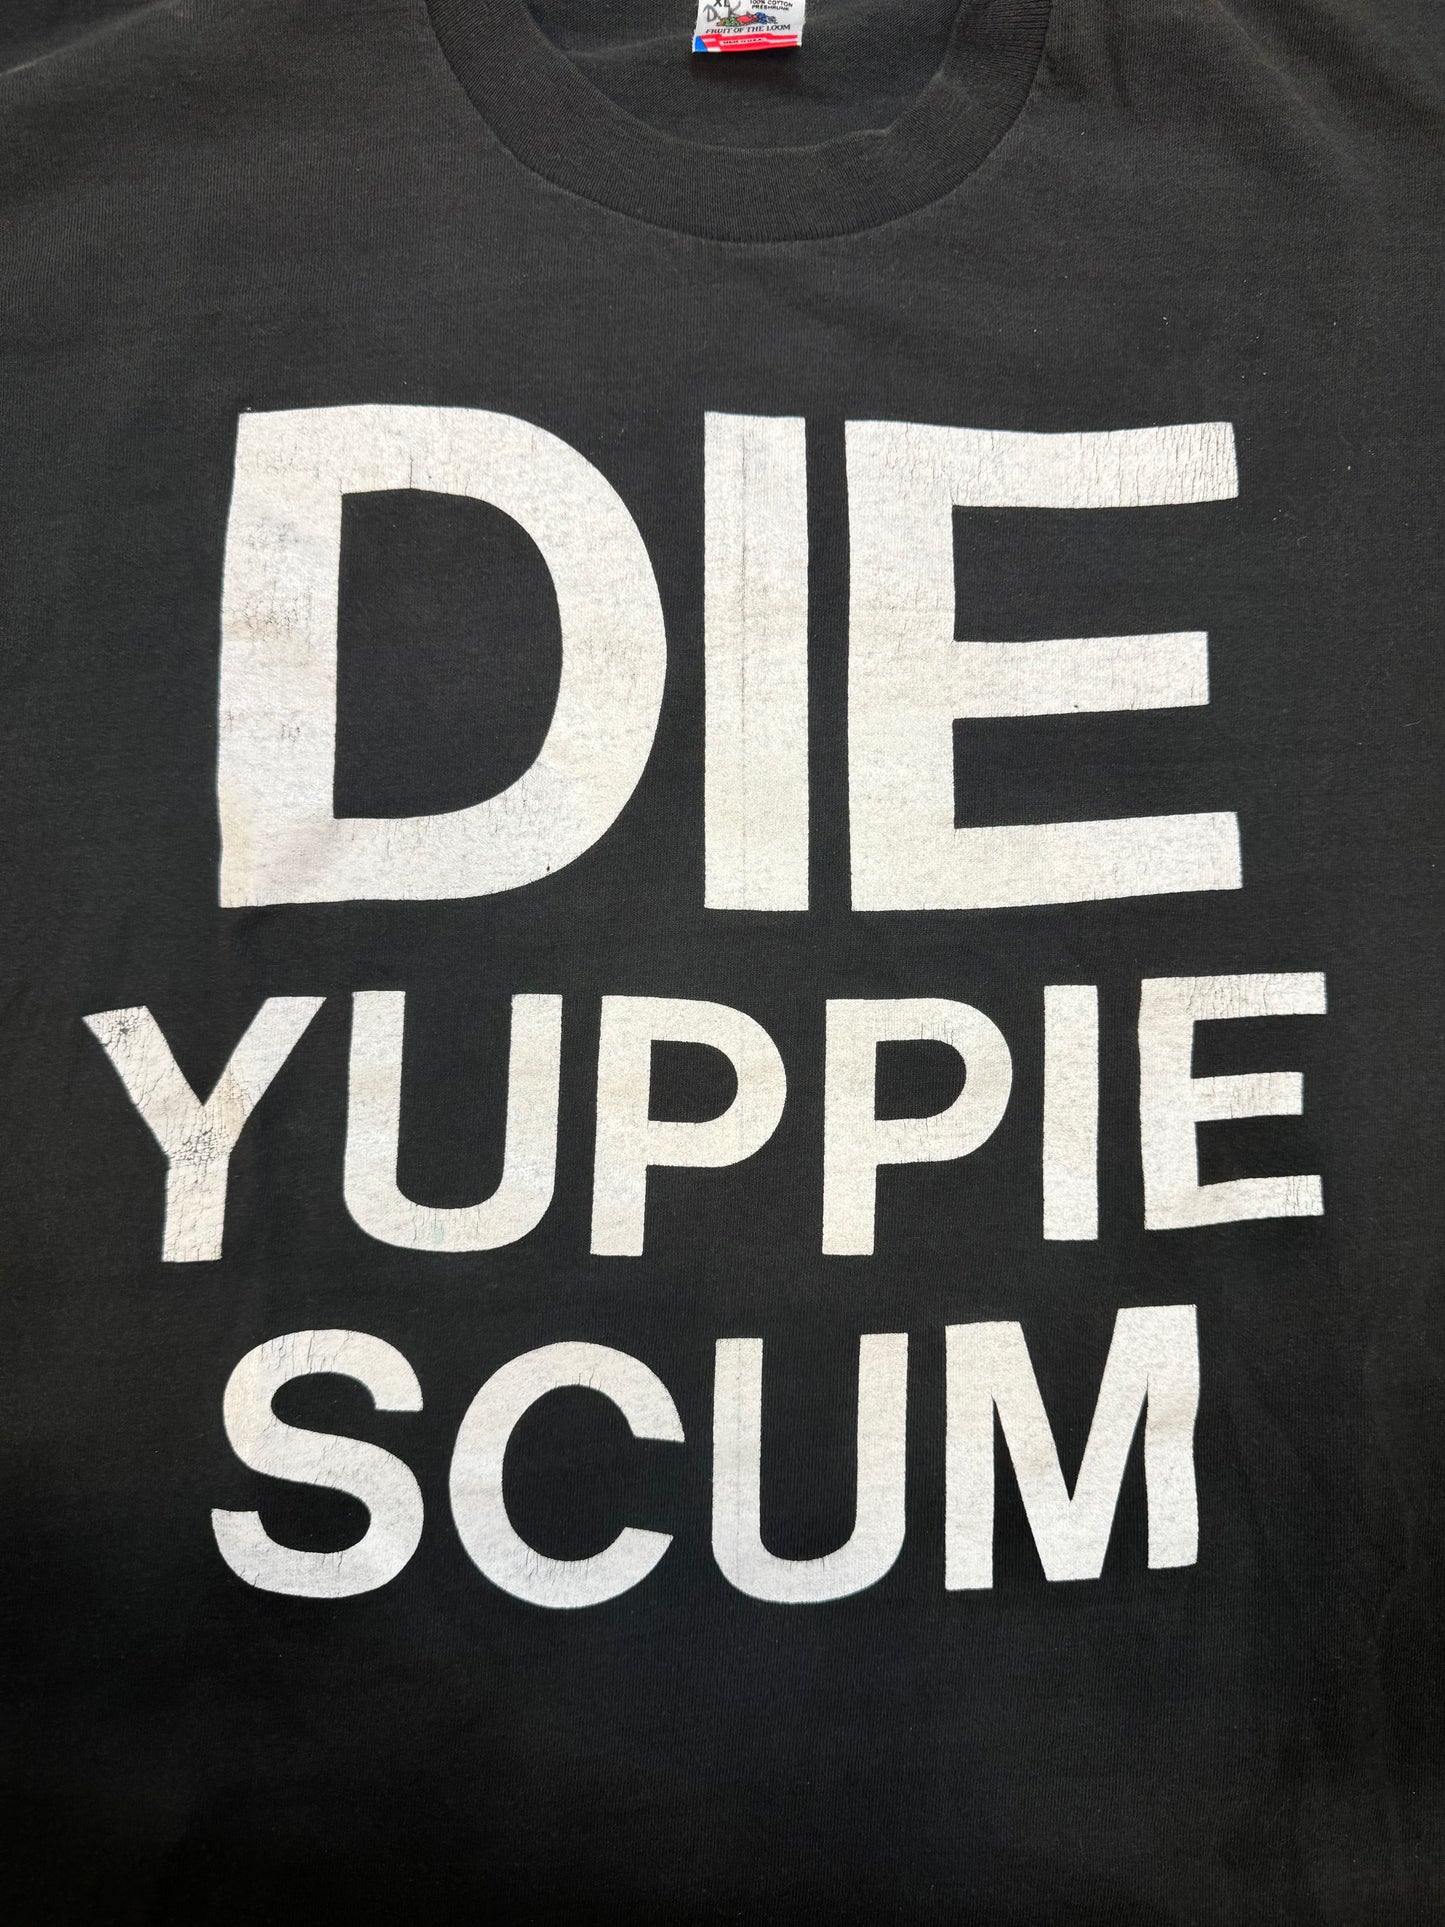 1990's Vintage Die Yuppie Scum T Shirt